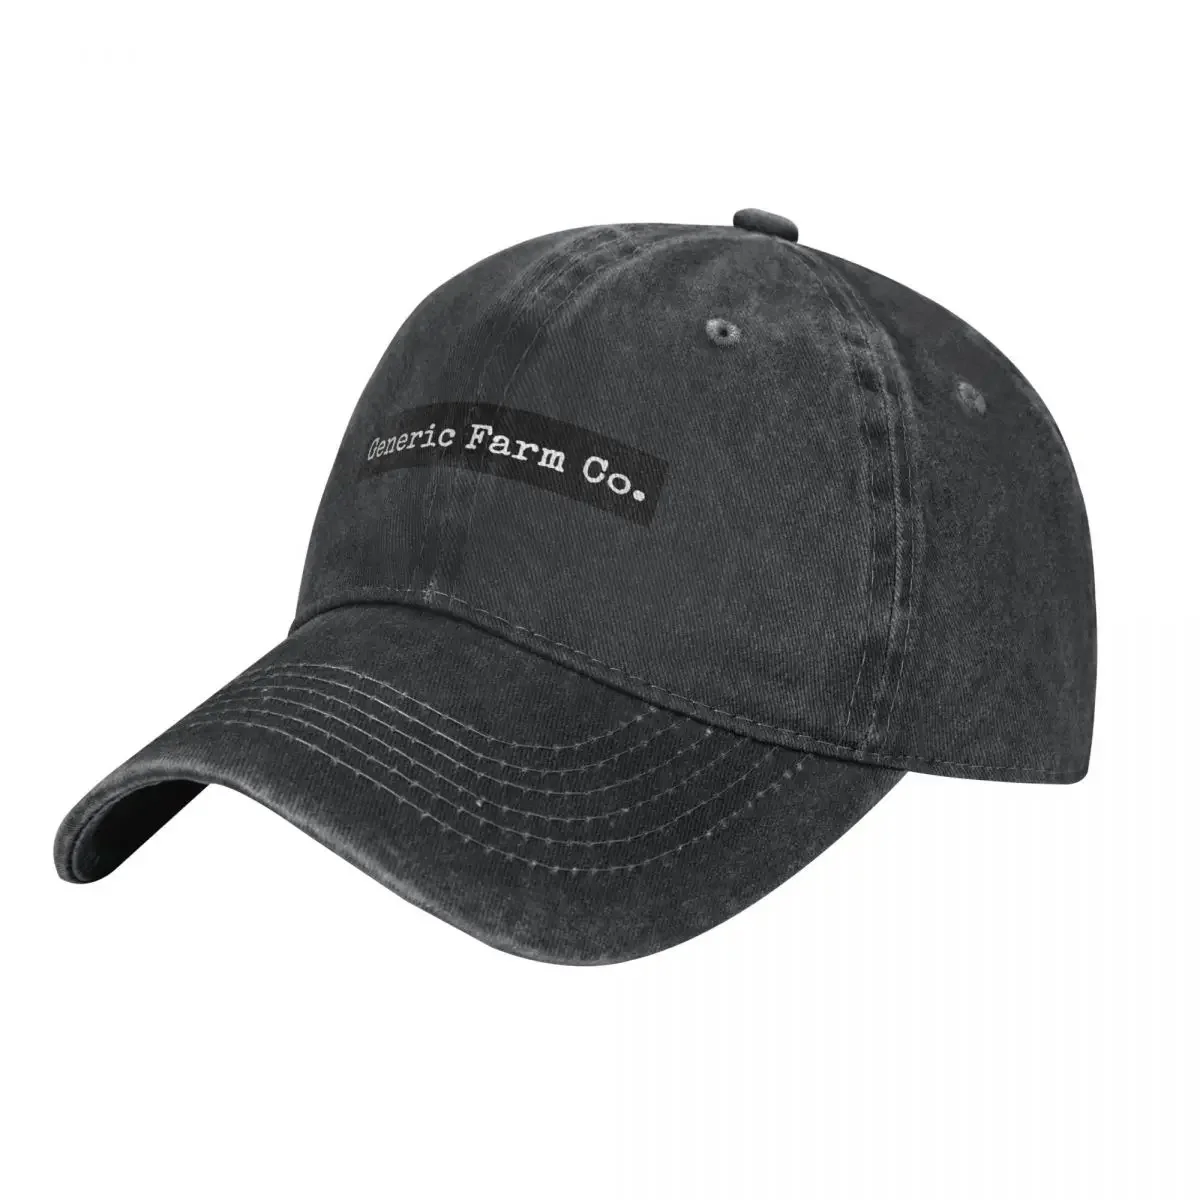 

Generic Farm Co. Cowboy Hat Luxury Cap Sun Cap Brand Man cap Hat Beach Elegant Women's Hats Men's